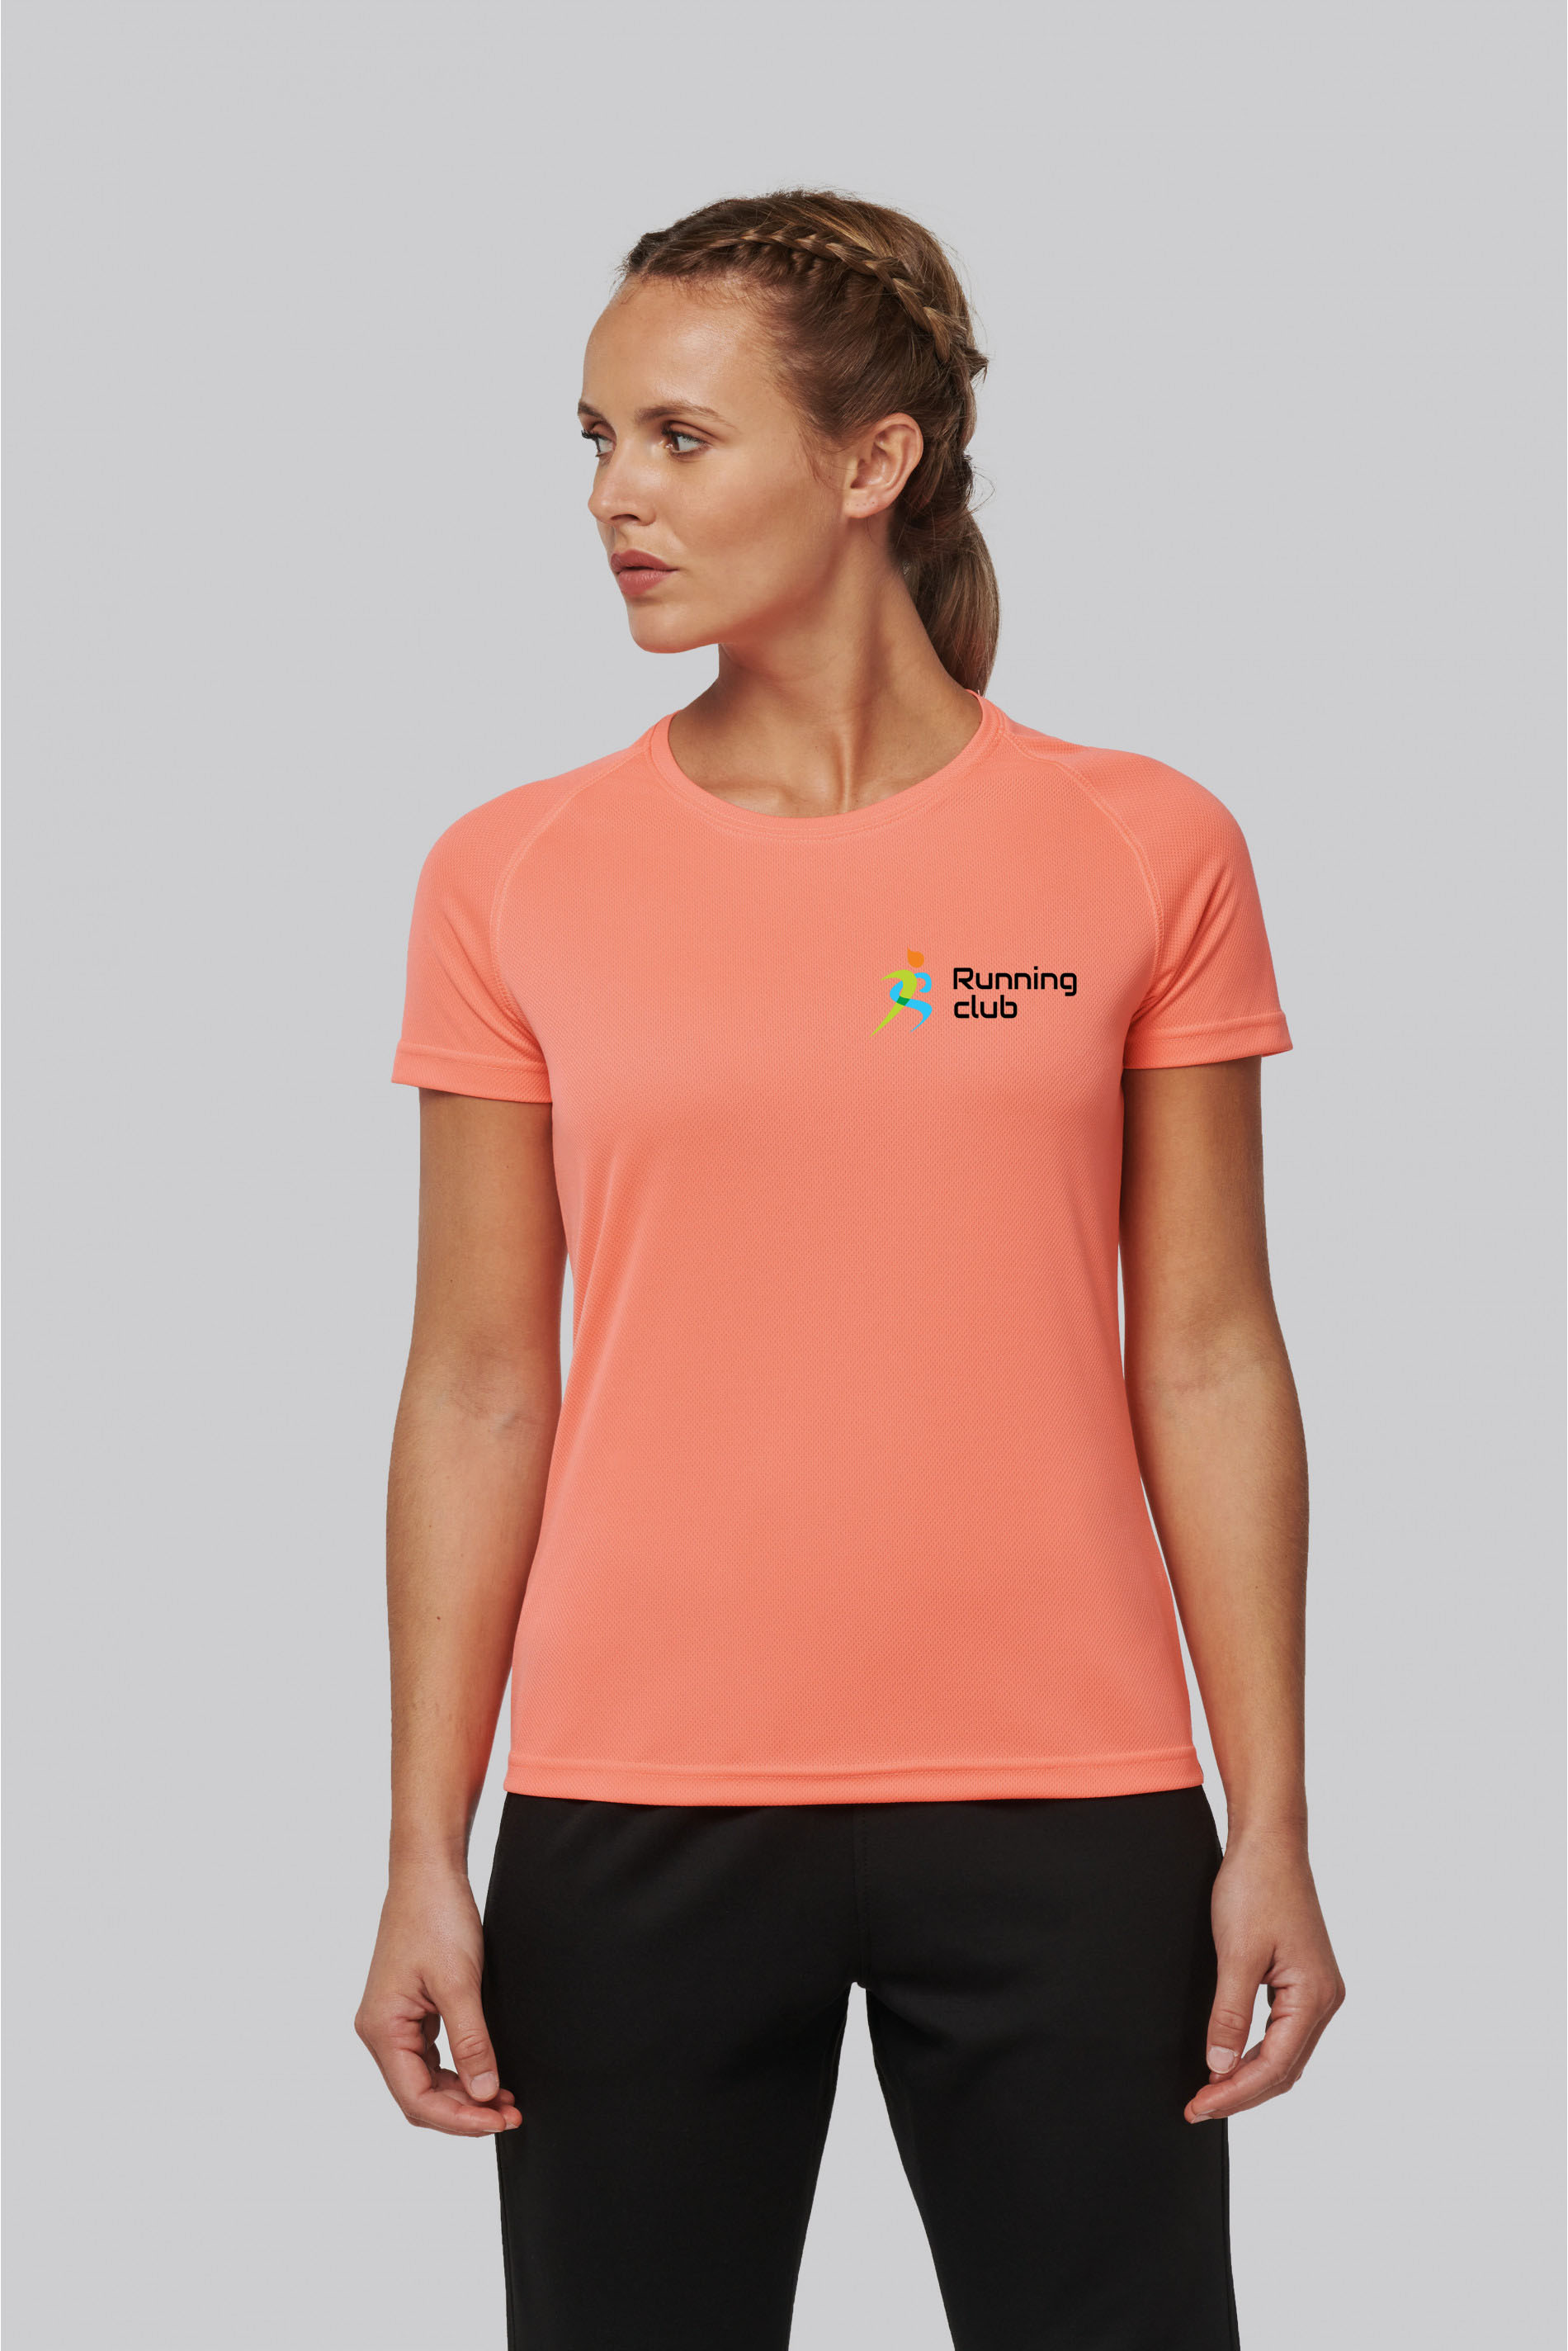 T-shirt sport pour femme personnalisé - manches courtes